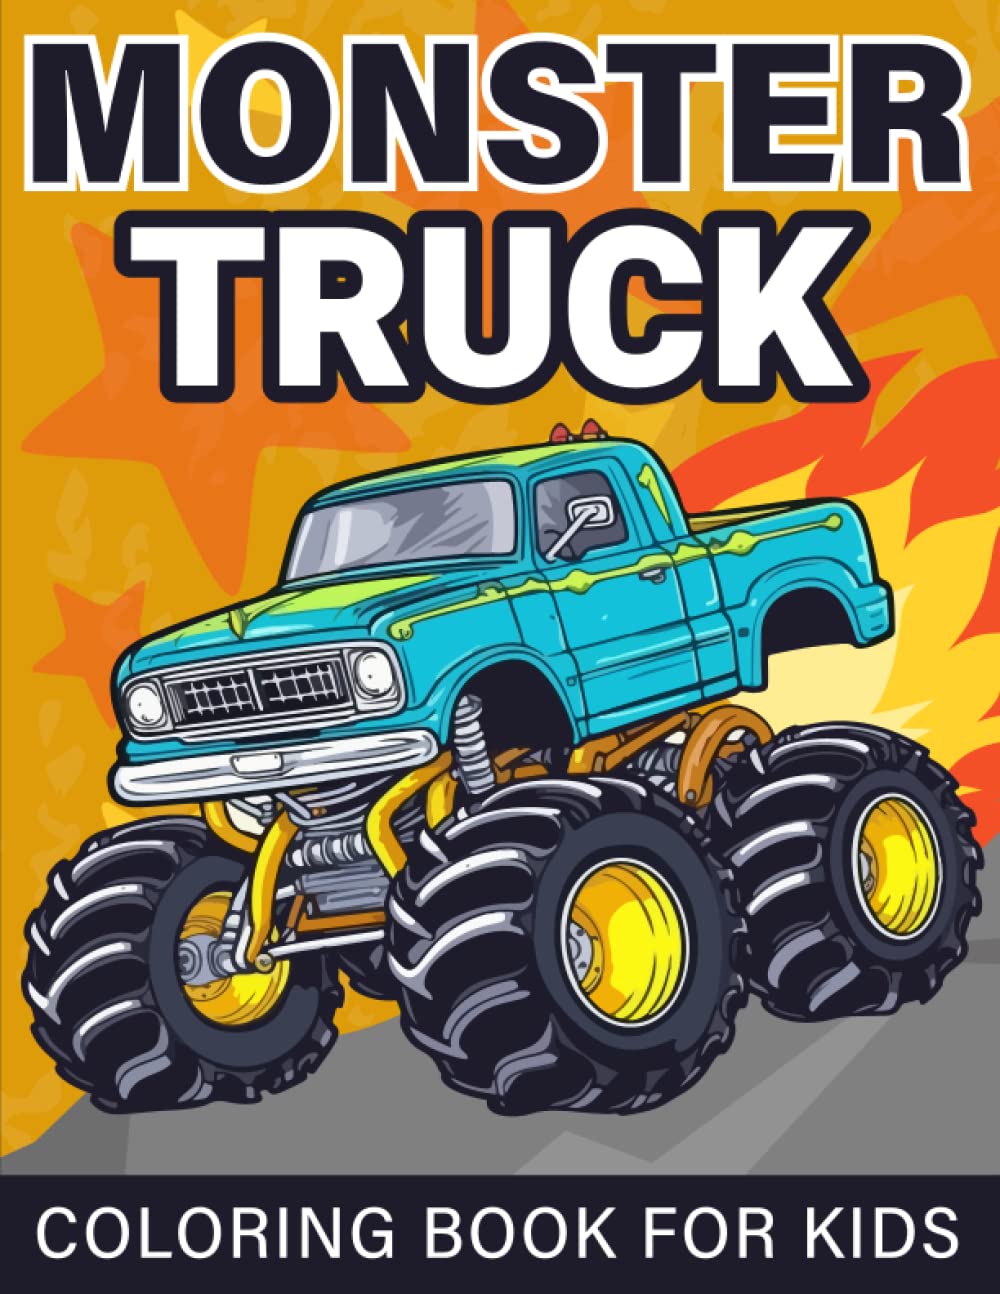 Monster Truck Coloring Book For Kids: Truck Coloring Book for Kids Ages 4-8, For Boys and Girls Who Love Monster Truck